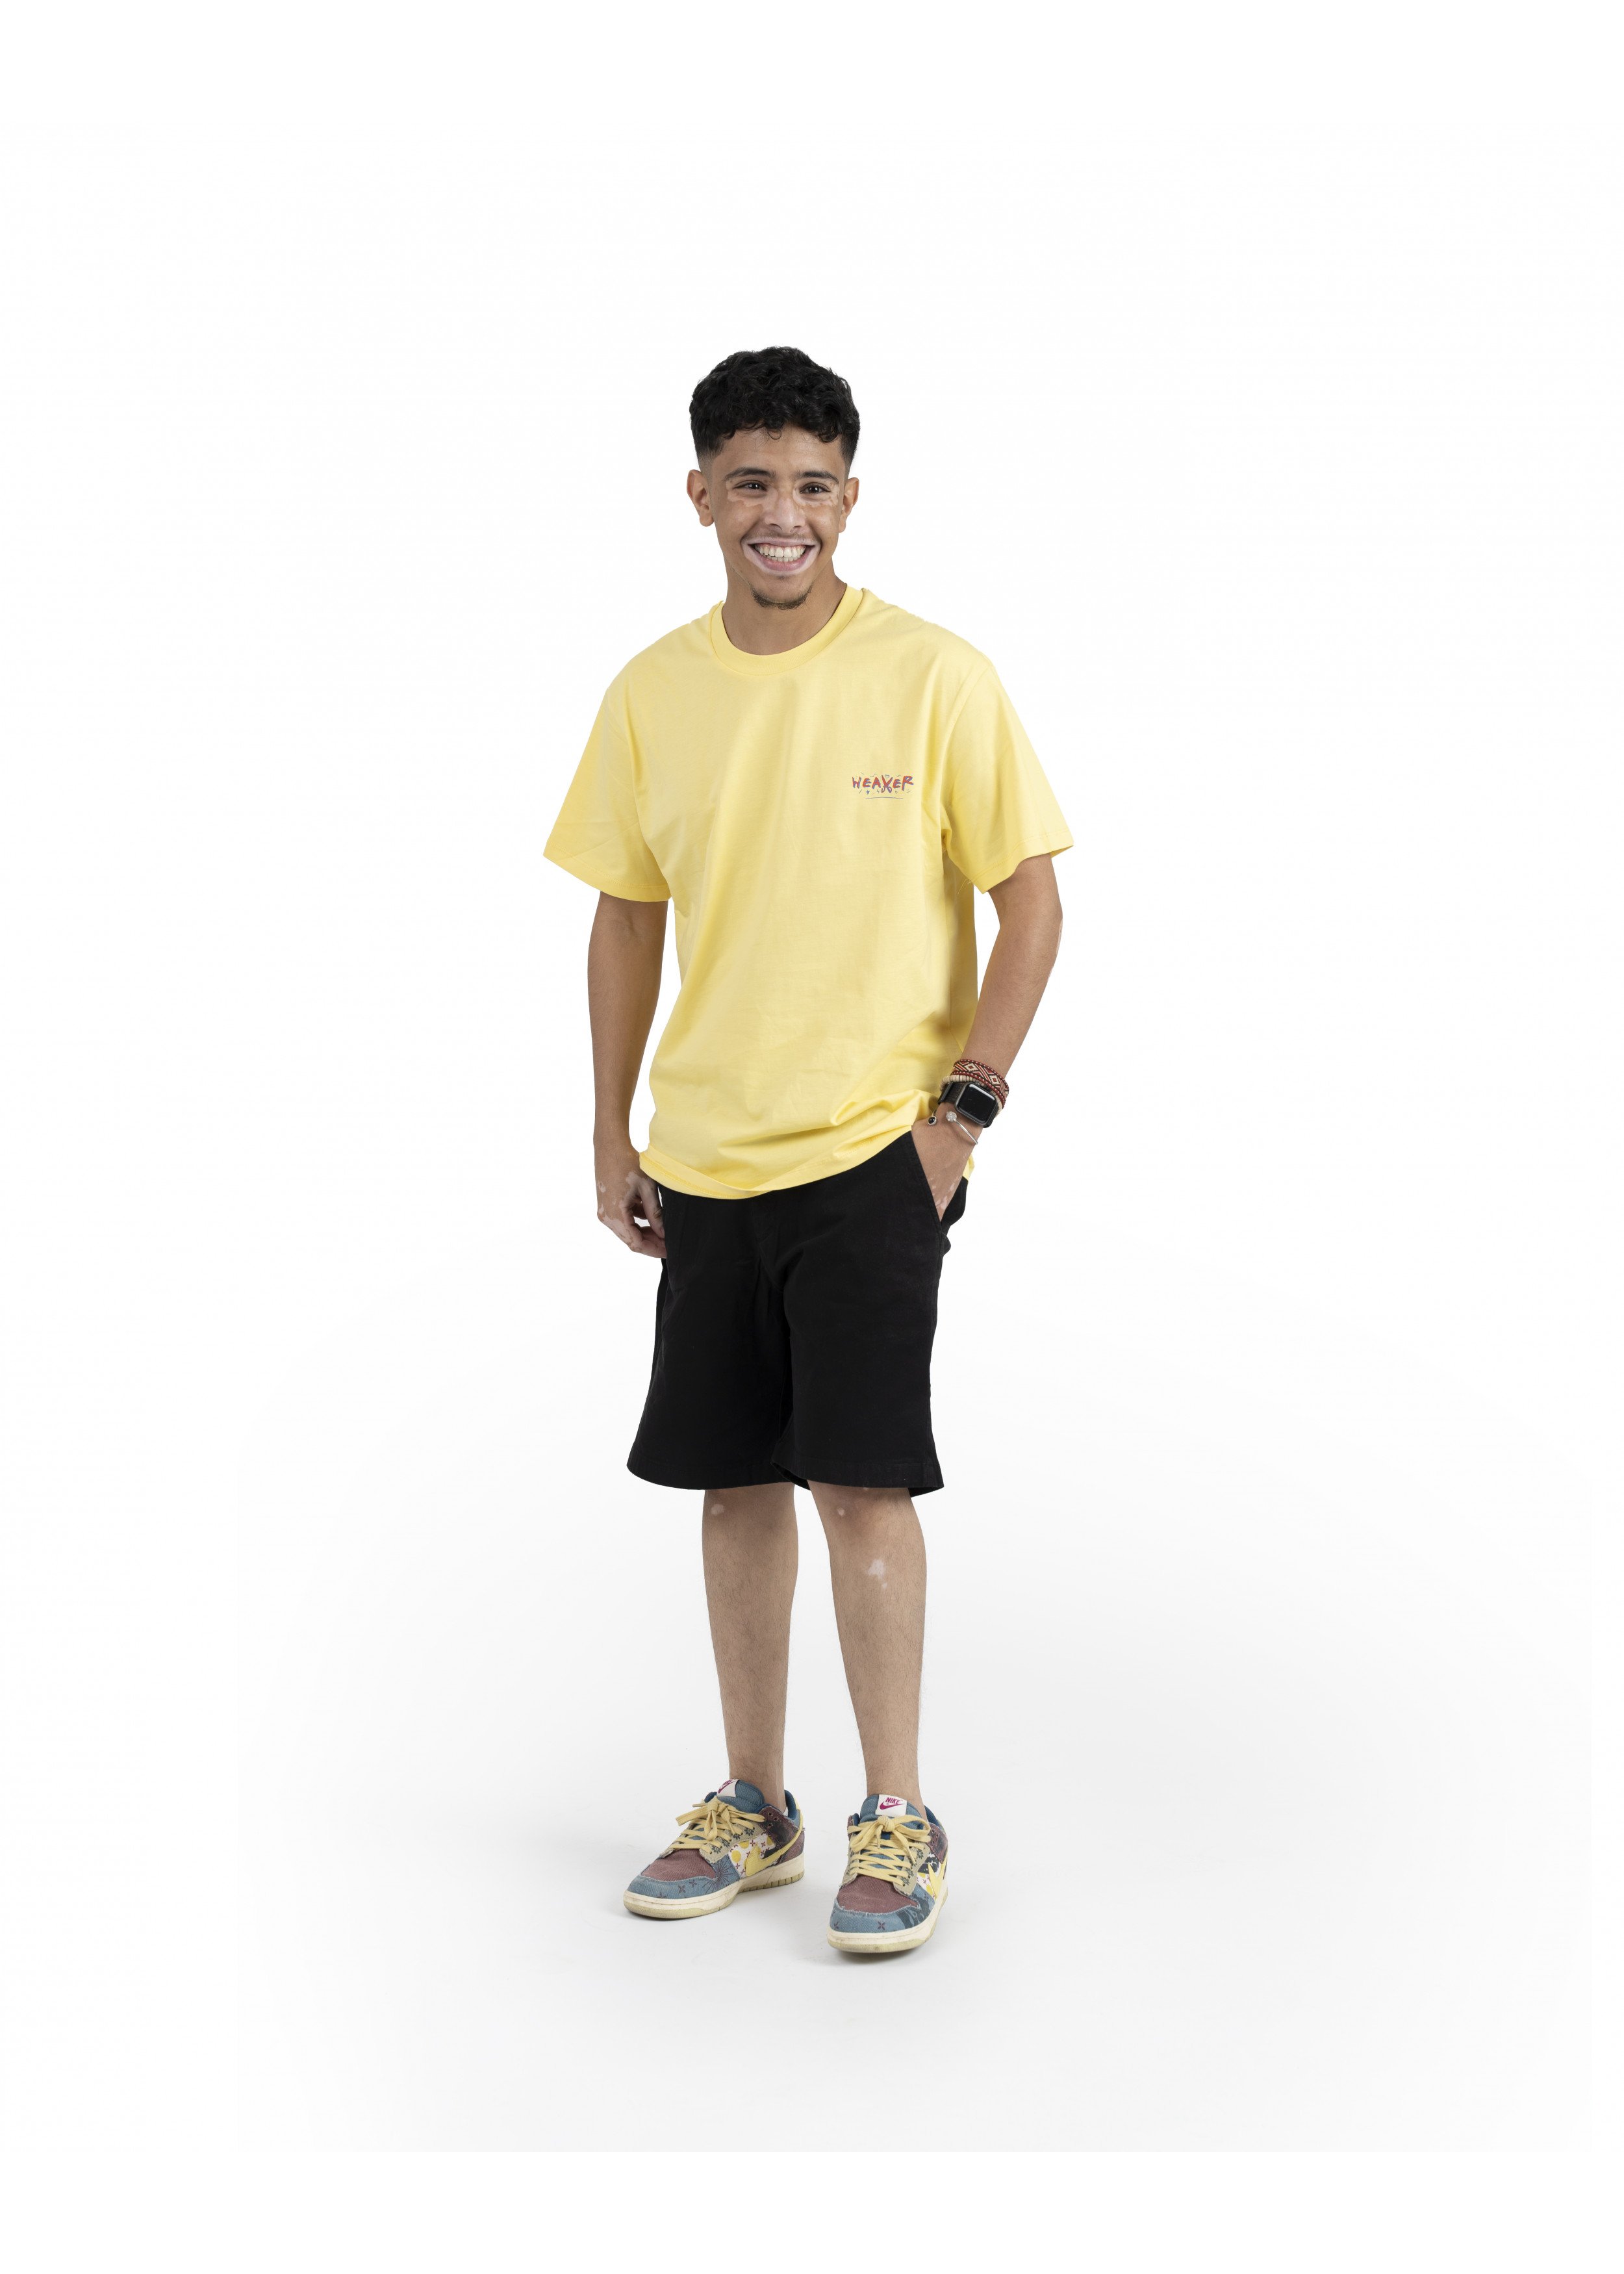 Classic T-shirt -Yellow